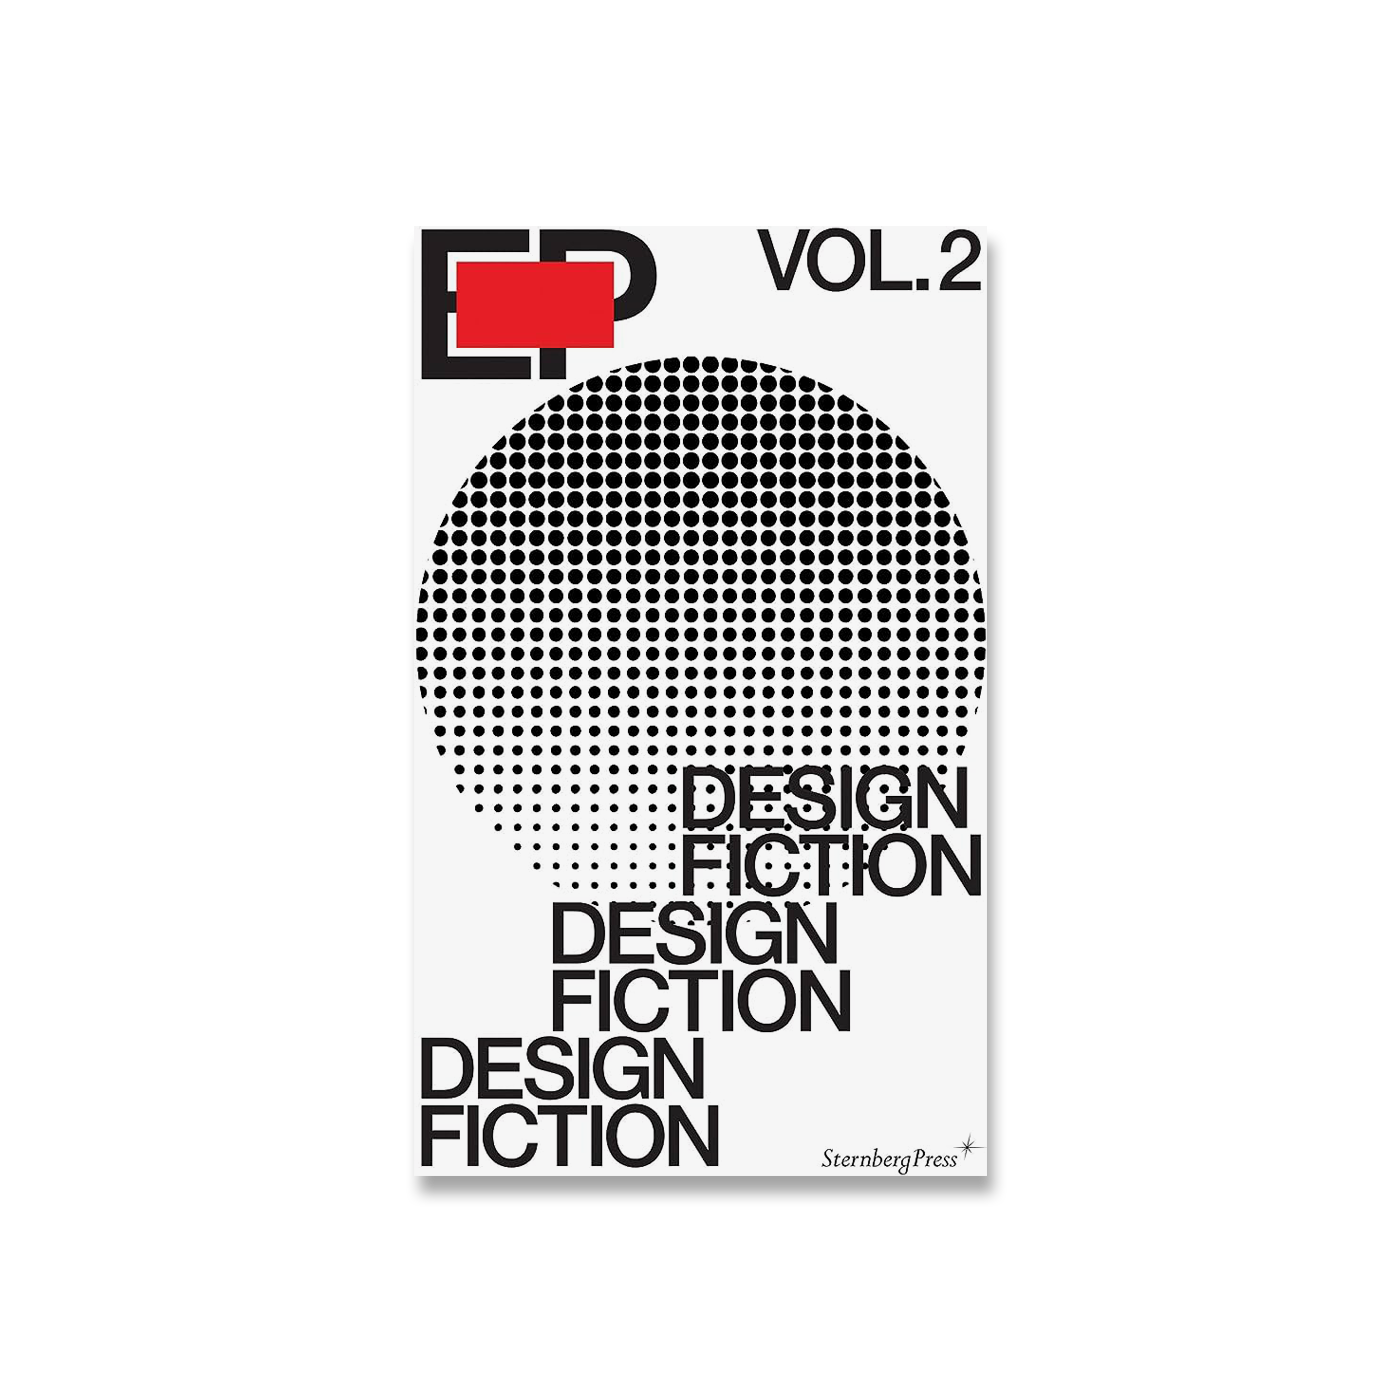 EP Vol. 2 - Design Fiction